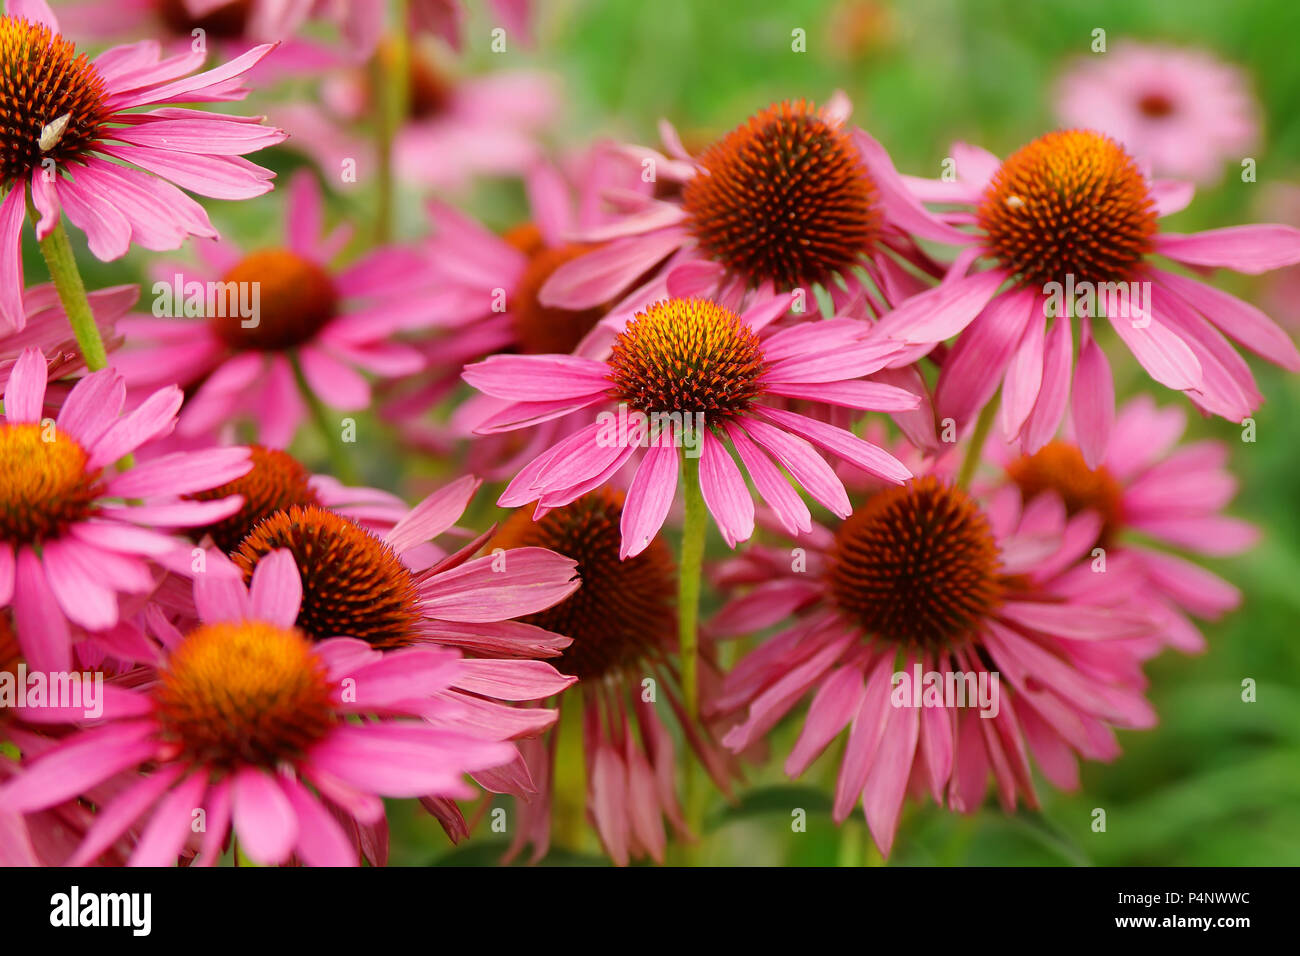 Espectacular por encima de la parte superior la saturación del color de una floración rosa Flores de echinacea Foto de stock